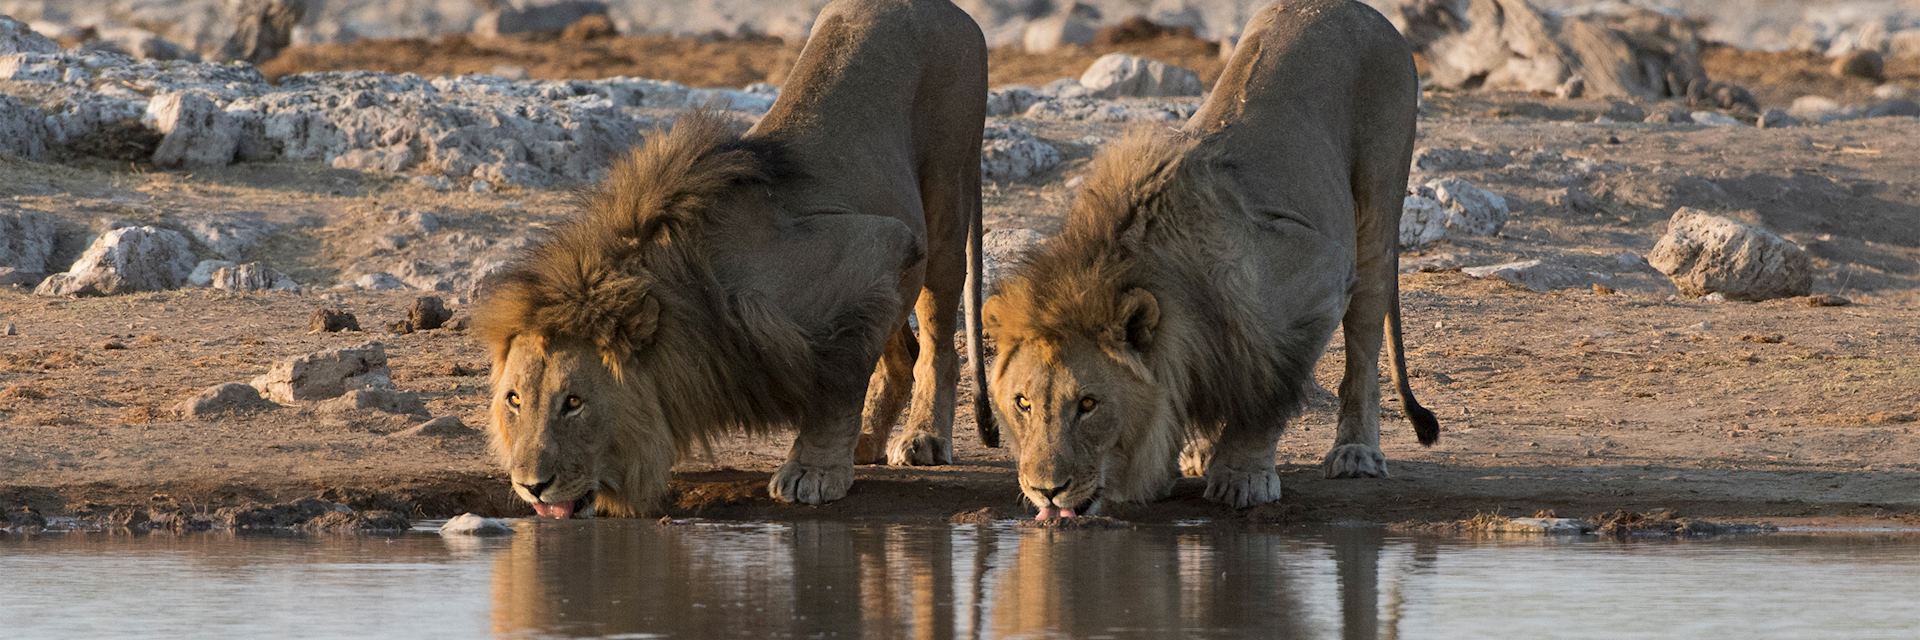 Lion, Etosha National Park